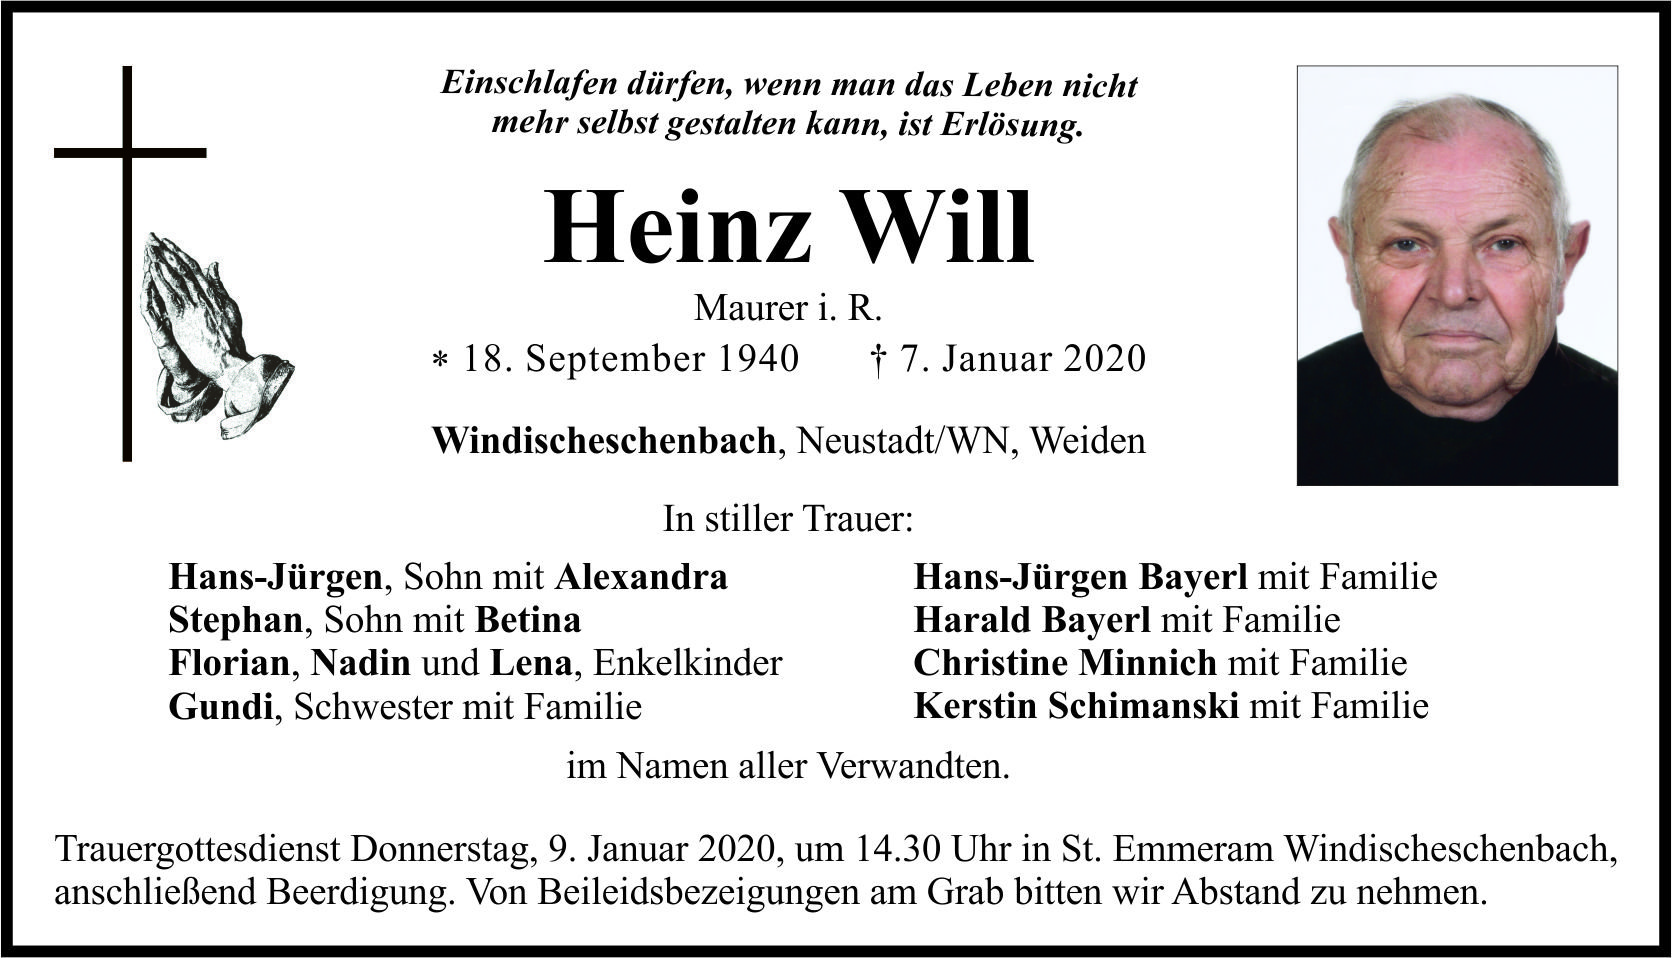 Traueranzeige Heinz Will, Windischeschenbach, NeustadtWN, Weiden